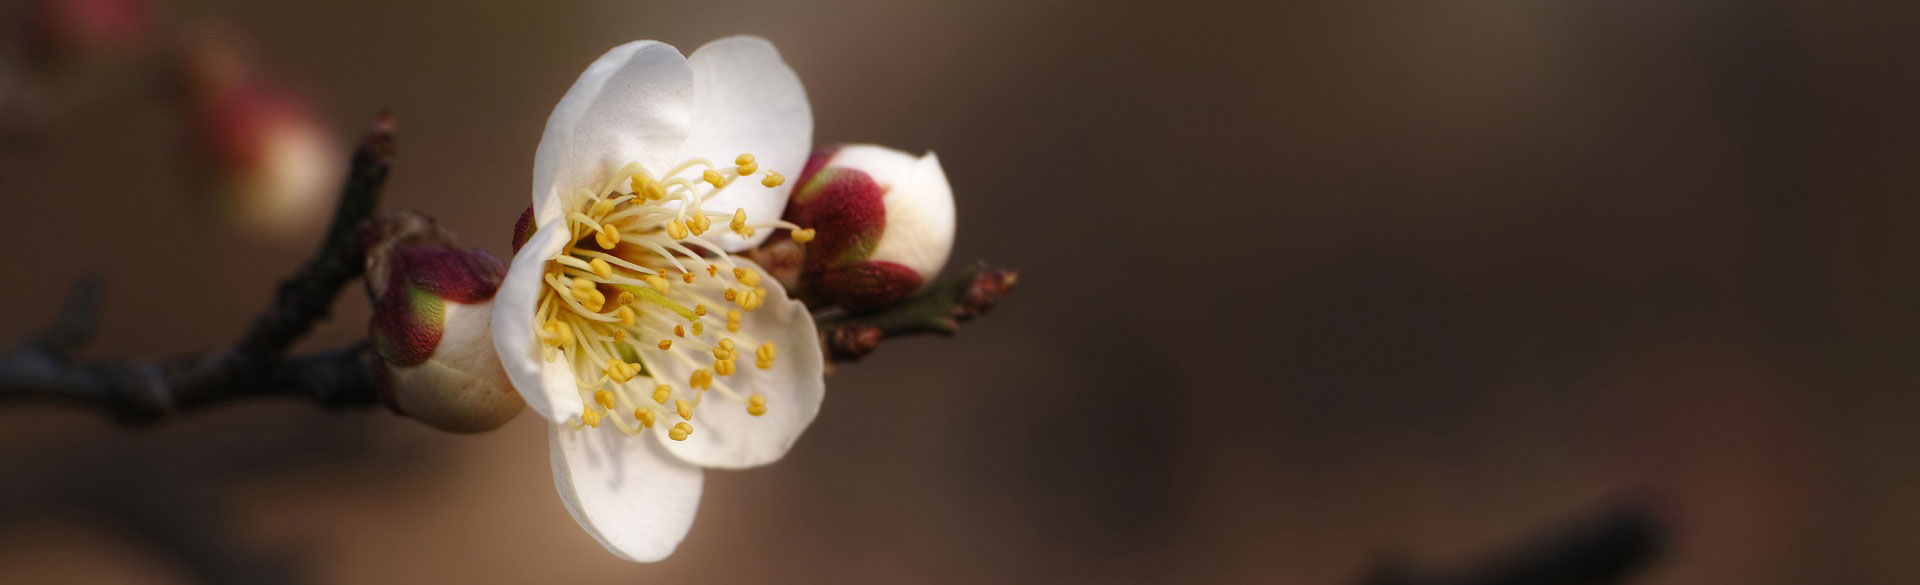 Plum blossom flower